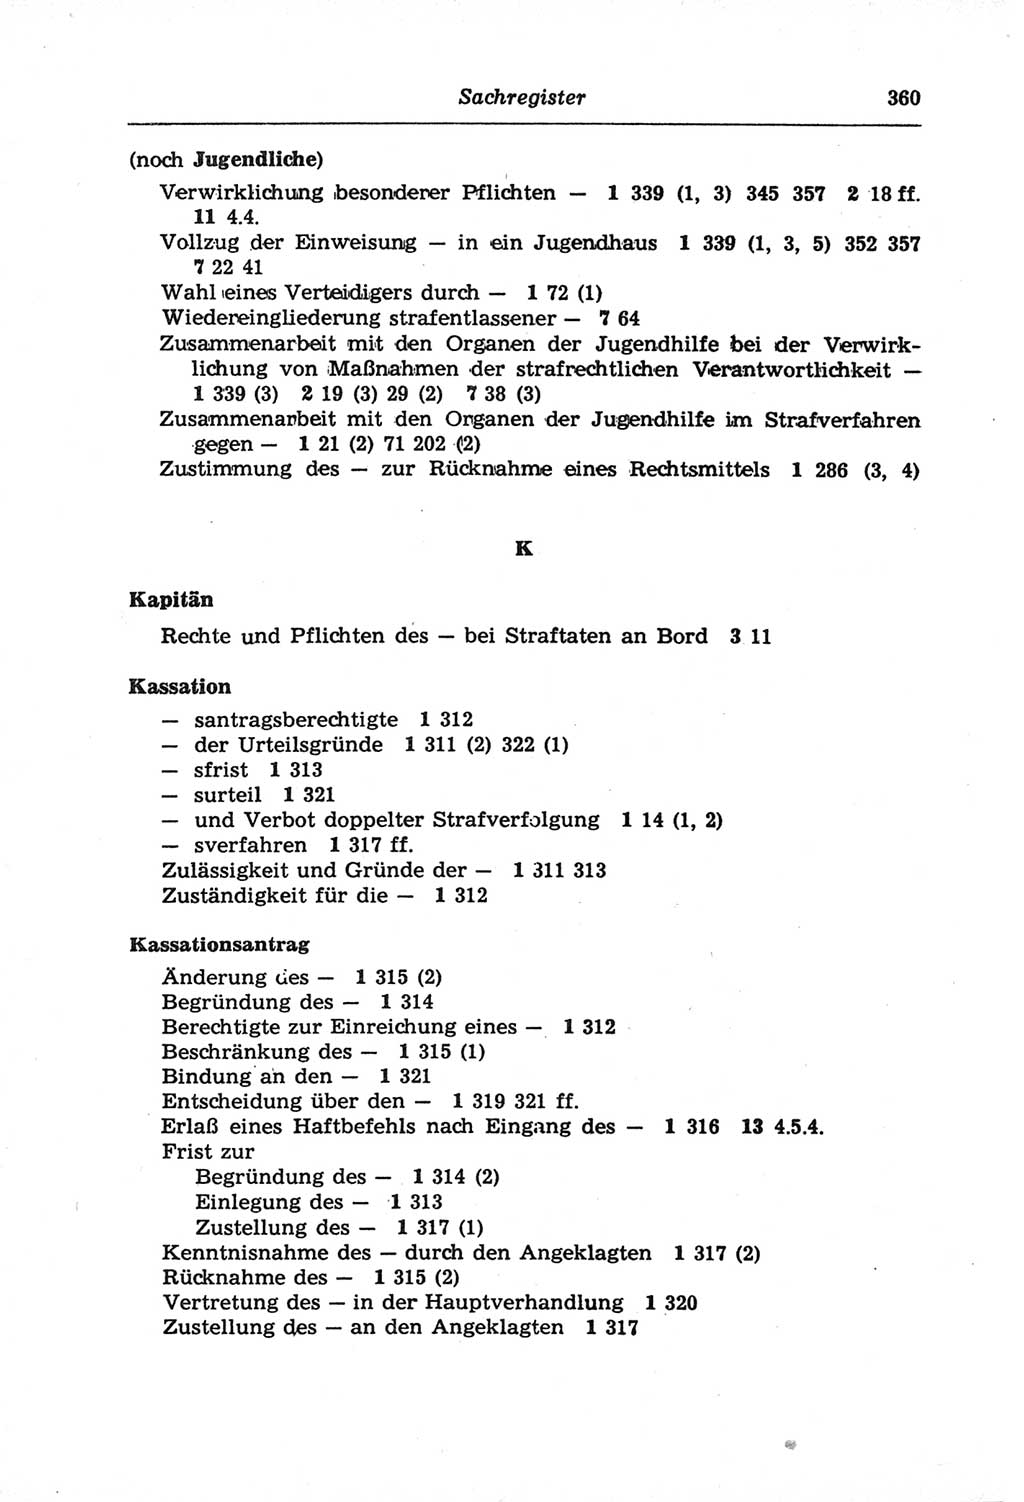 Strafprozeßordnung (StPO) der Deutschen Demokratischen Republik (DDR) und angrenzende Gesetze und Bestimmungen 1968, Seite 360 (StPO Ges. Bstgn. DDR 1968, S. 360)